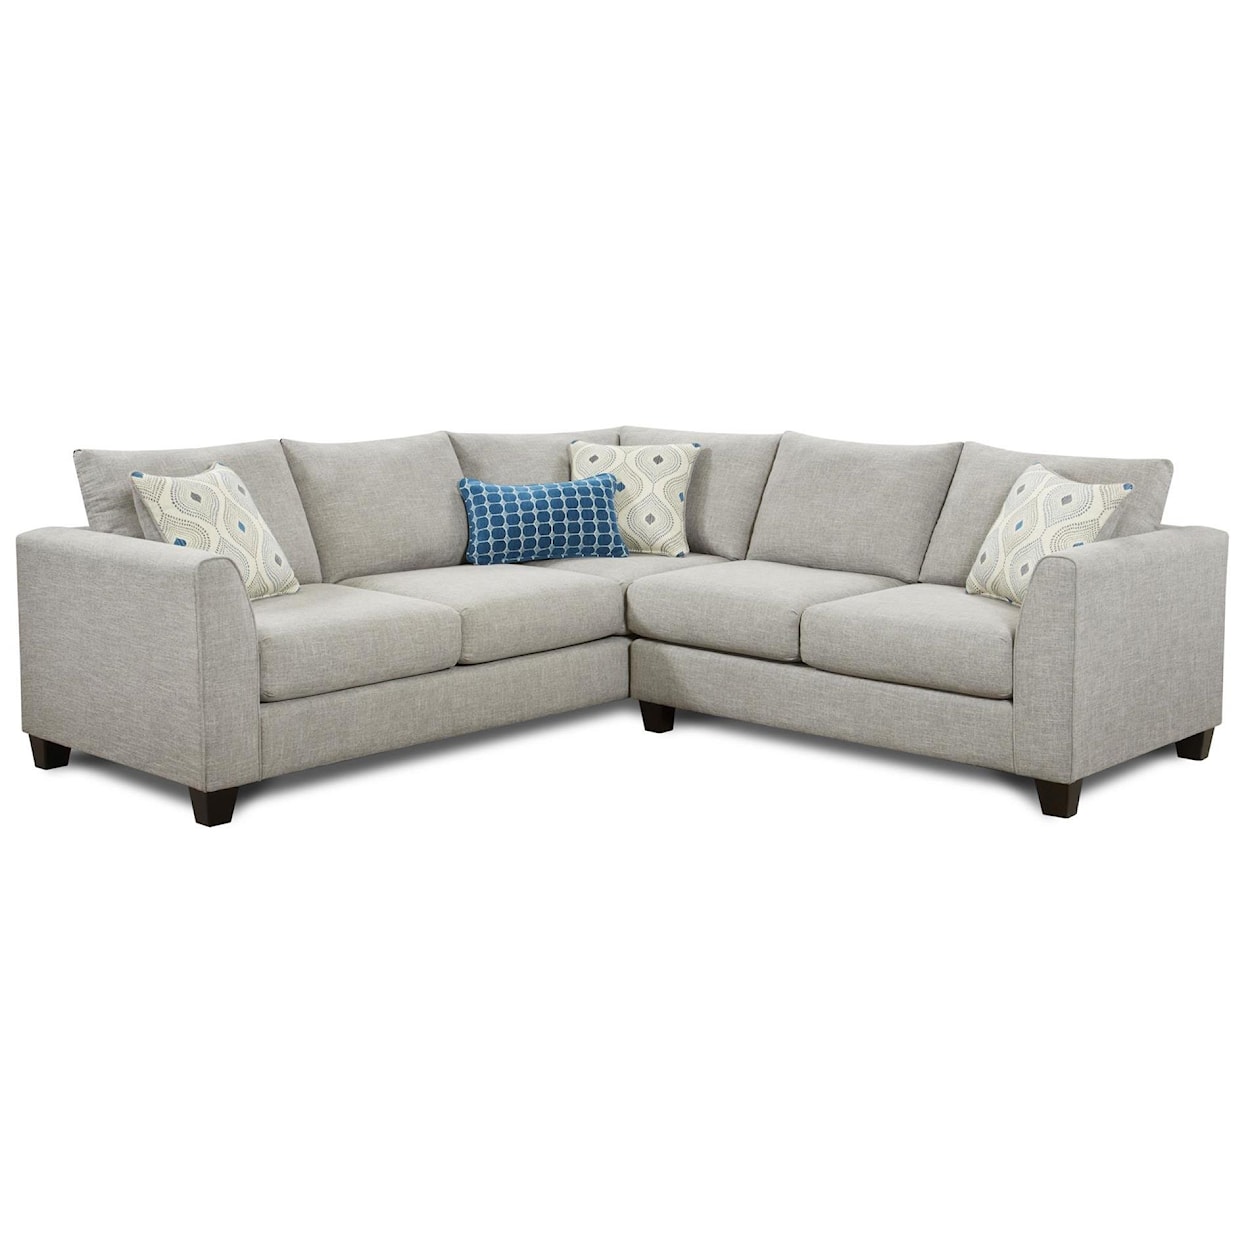 Fusion Furniture 2806 PARADIGM QUARTZ 2-Piece Sectional